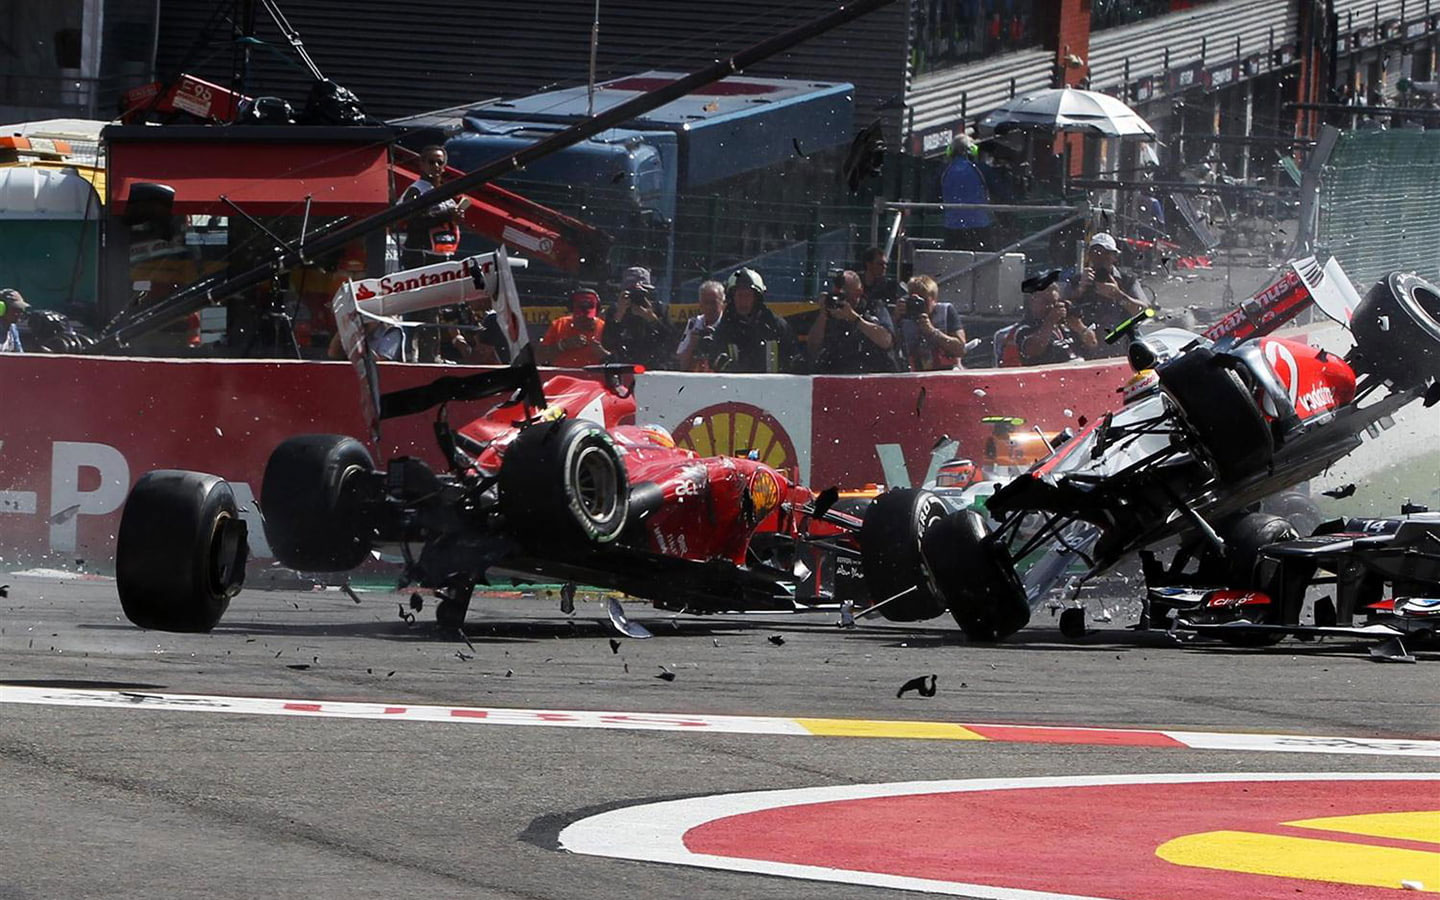 Wallpaper F1 Race Car Crash Accident Hd, F1, Cars & Motos